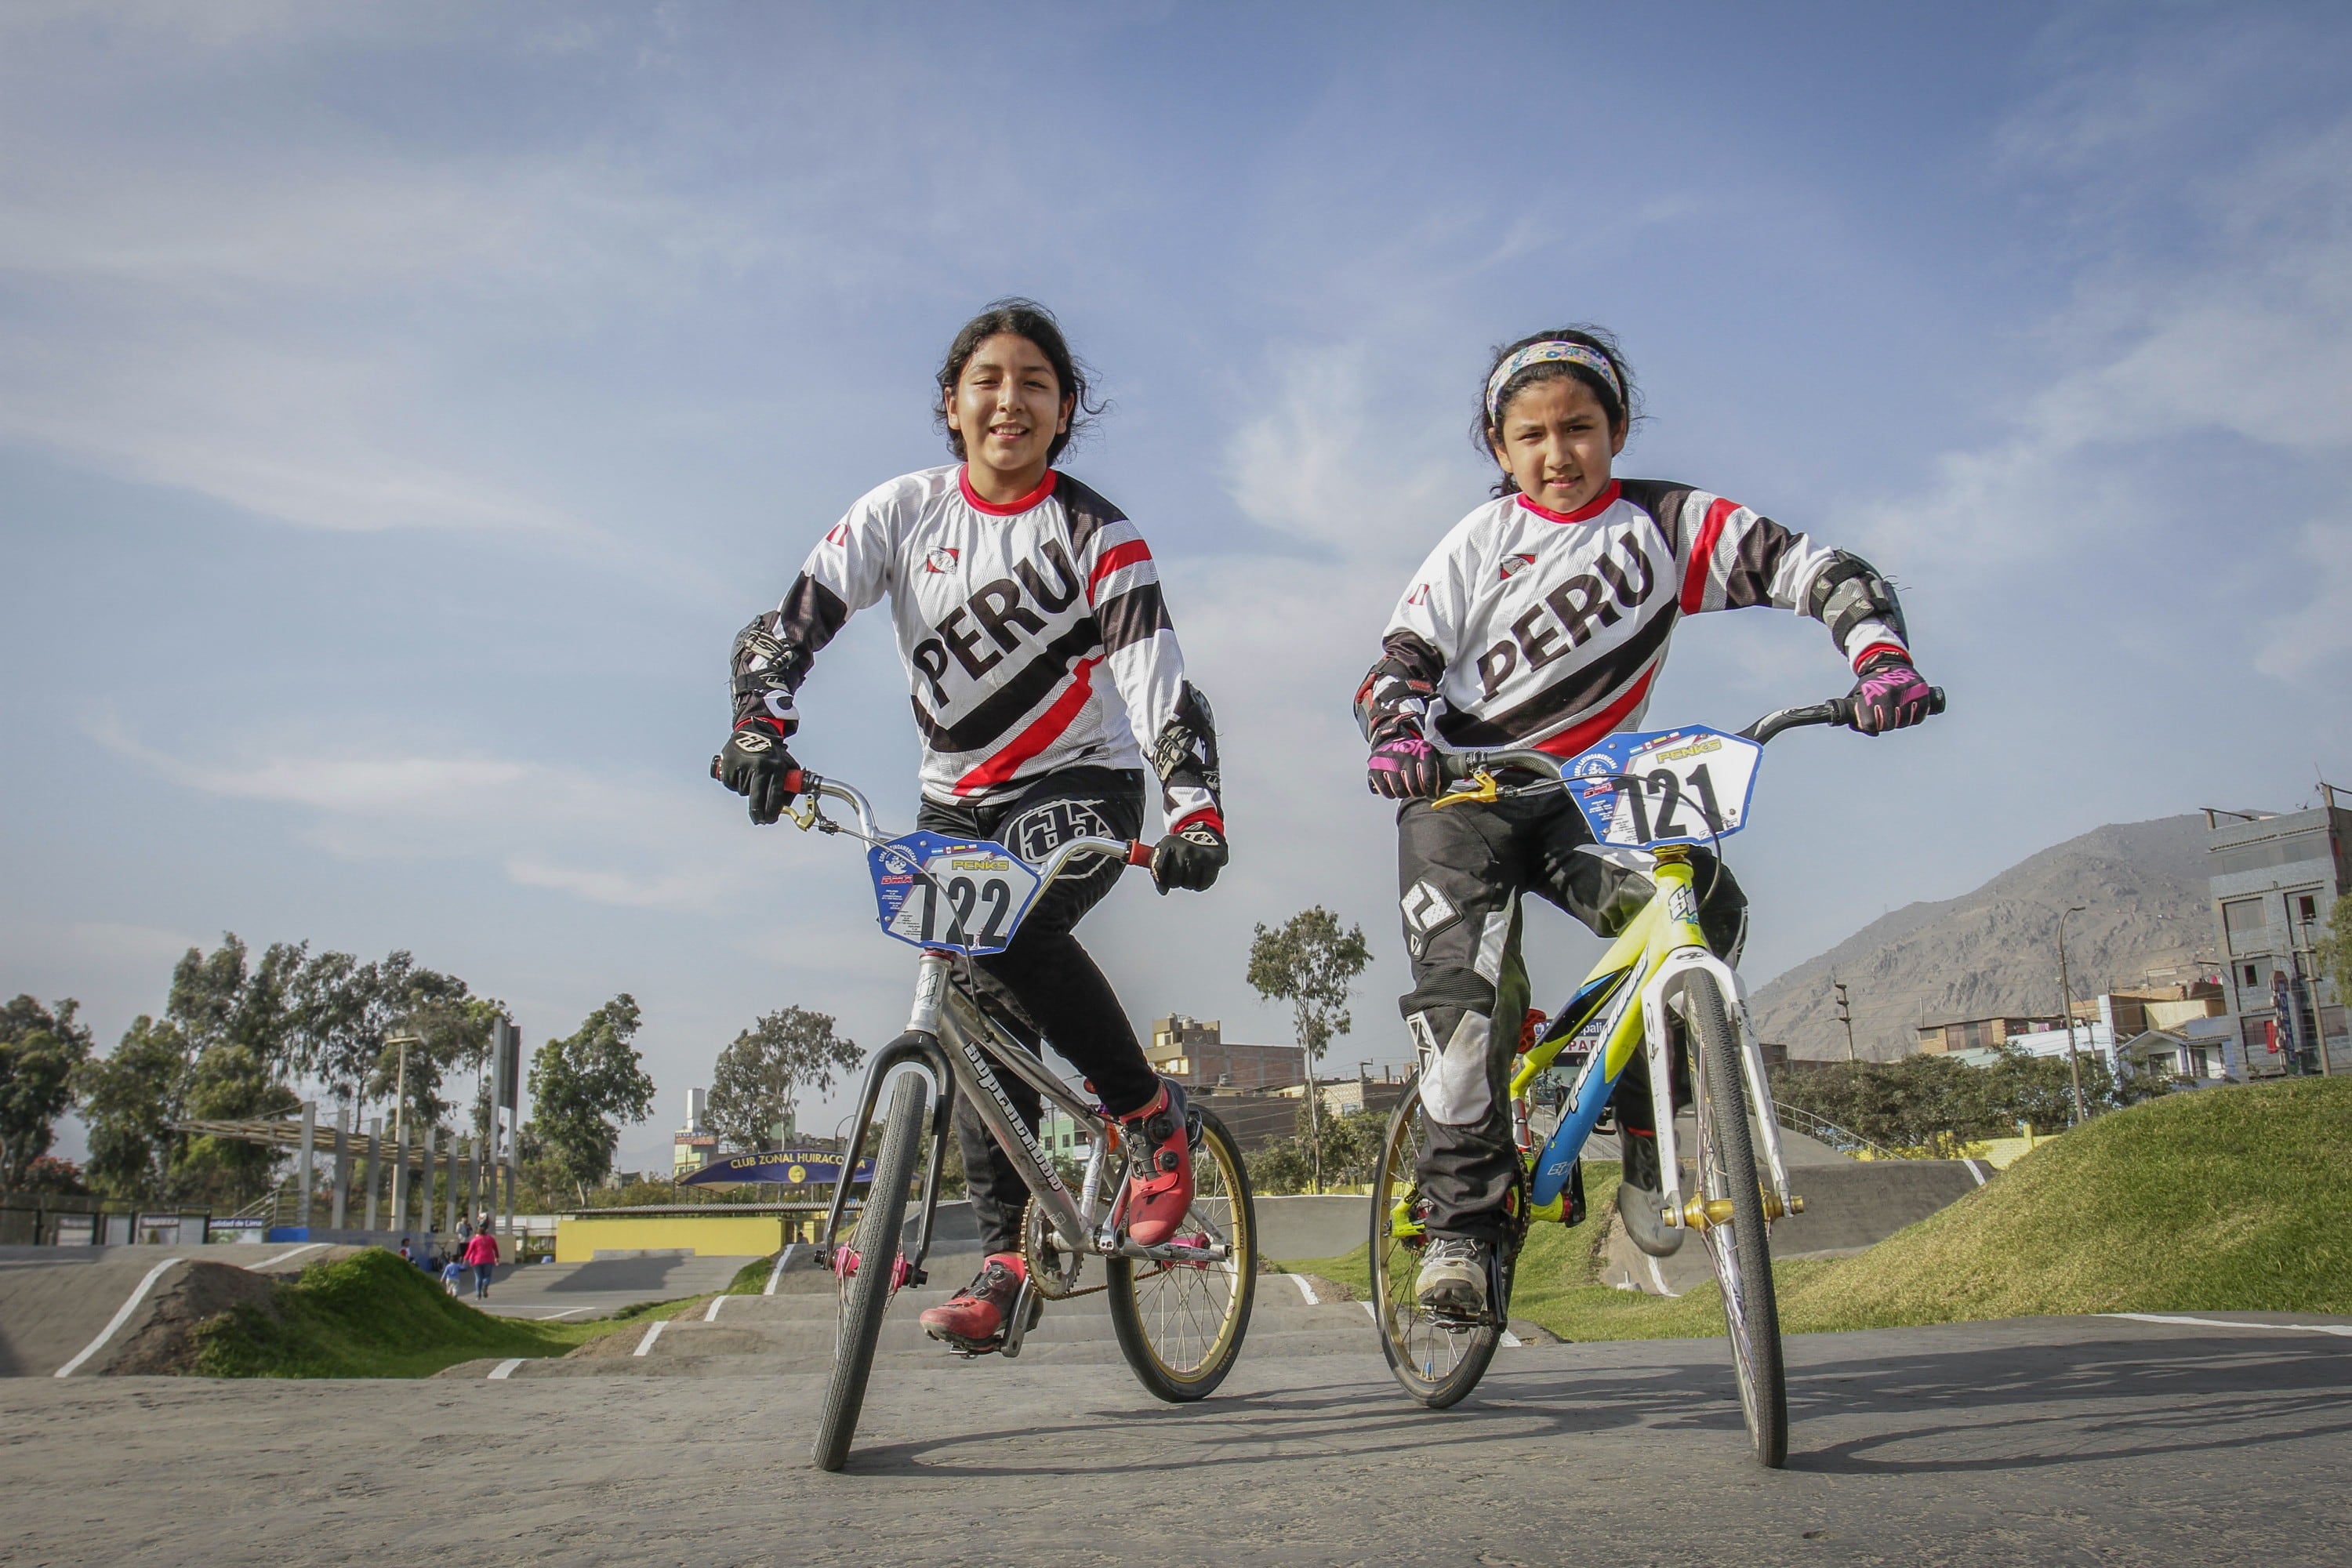 Ambas practican bicicross y se preparan para participar en importantes torneos en Chile y Rusia.